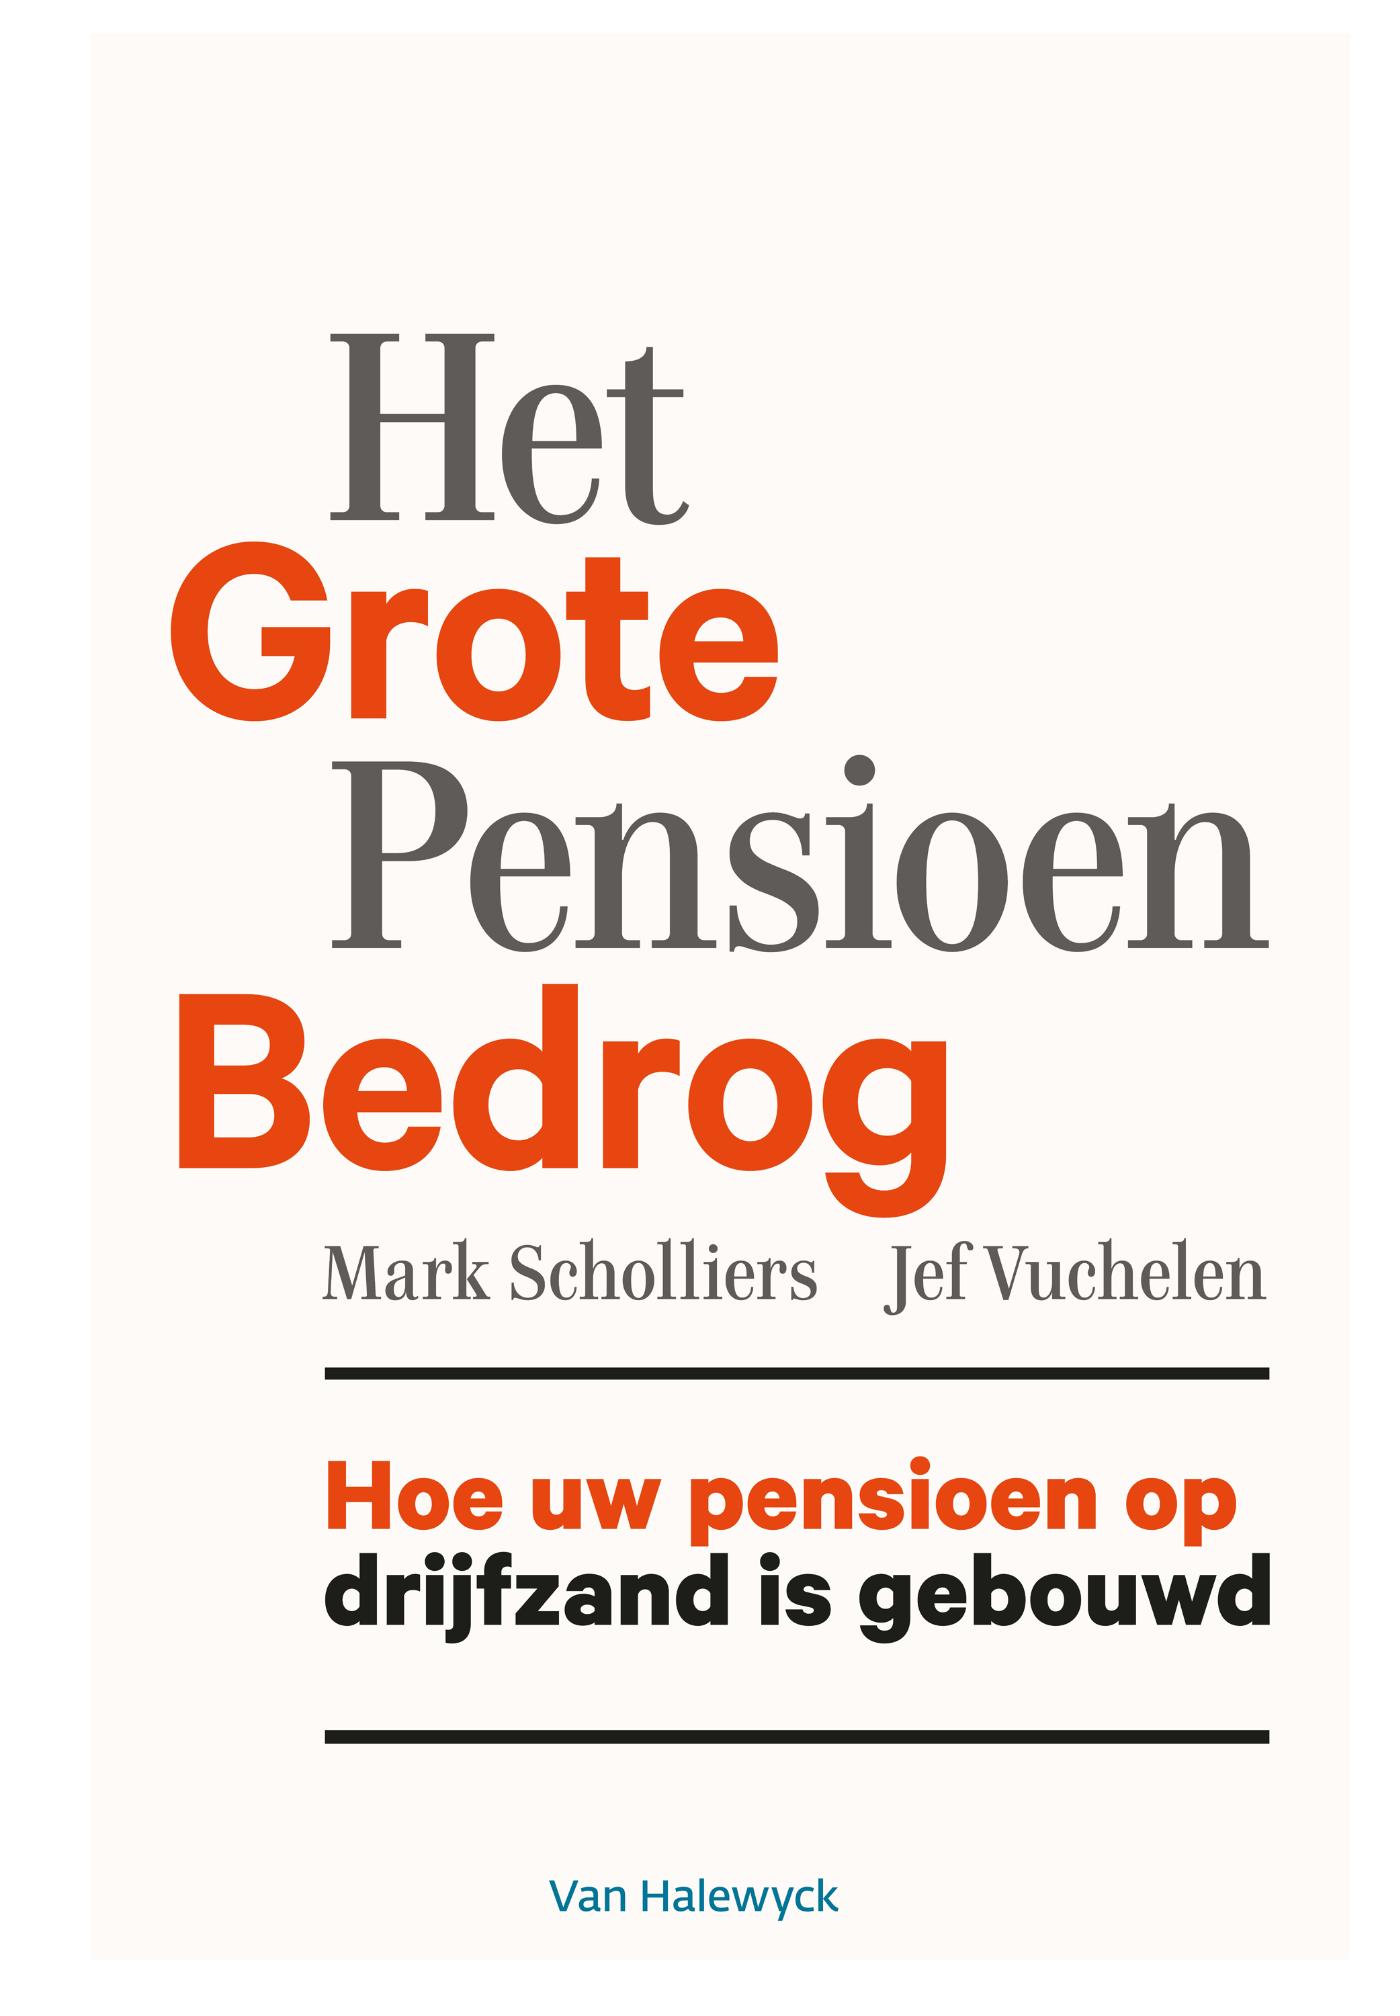 Het grote pensioenbedrog (Ebook)